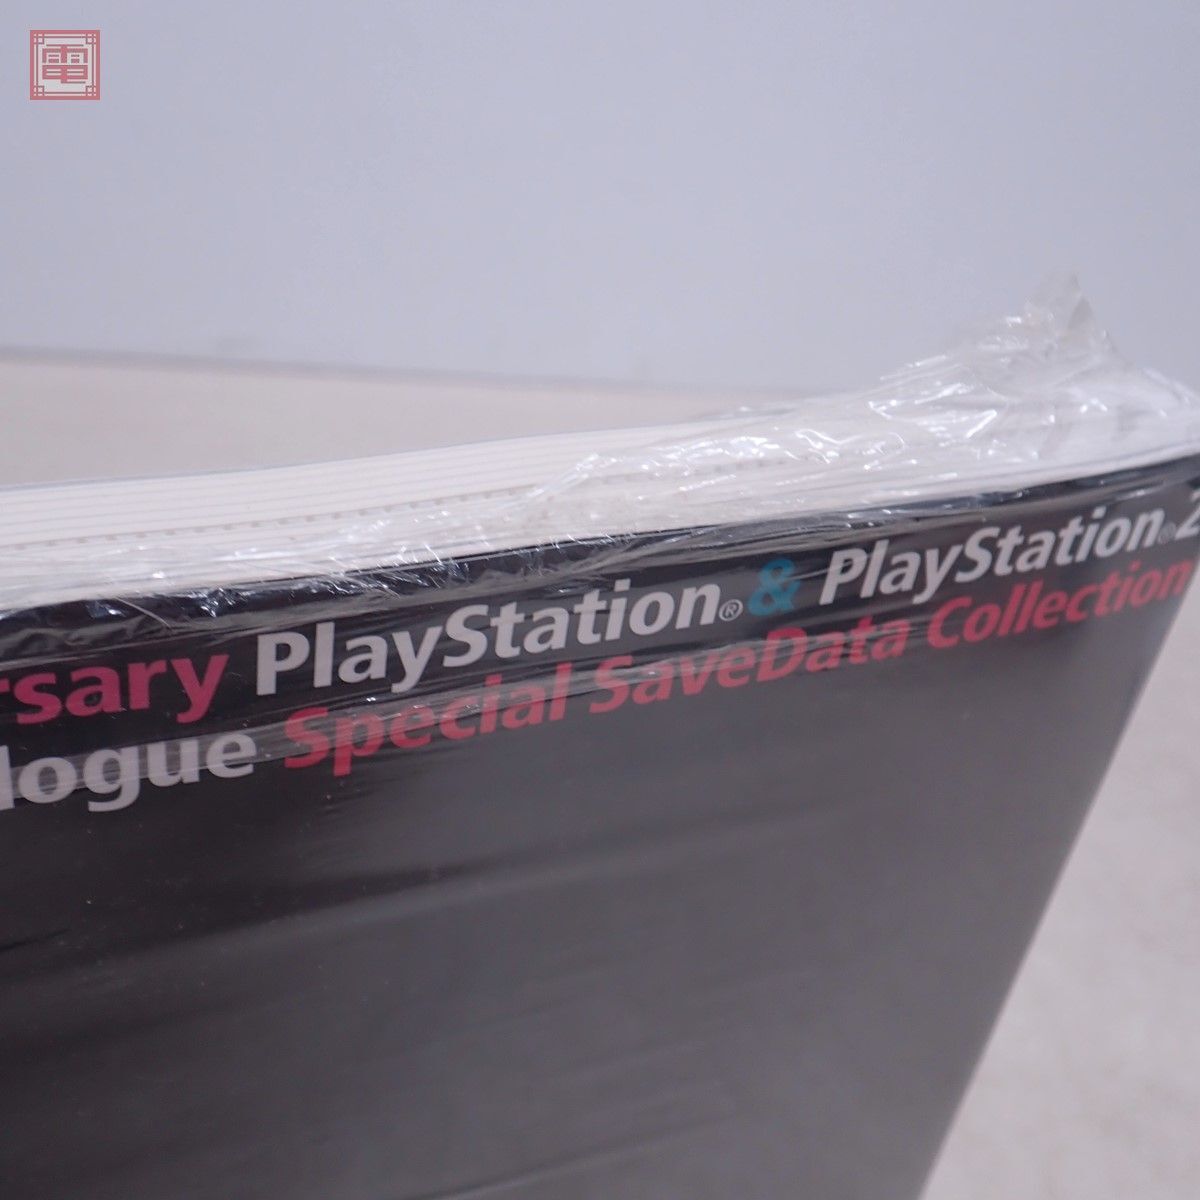  литература 10th Anniversary PlayStation & PlayStation2 все soft каталог специальный save данные коллекция PS shrink нераспечатанный [PP